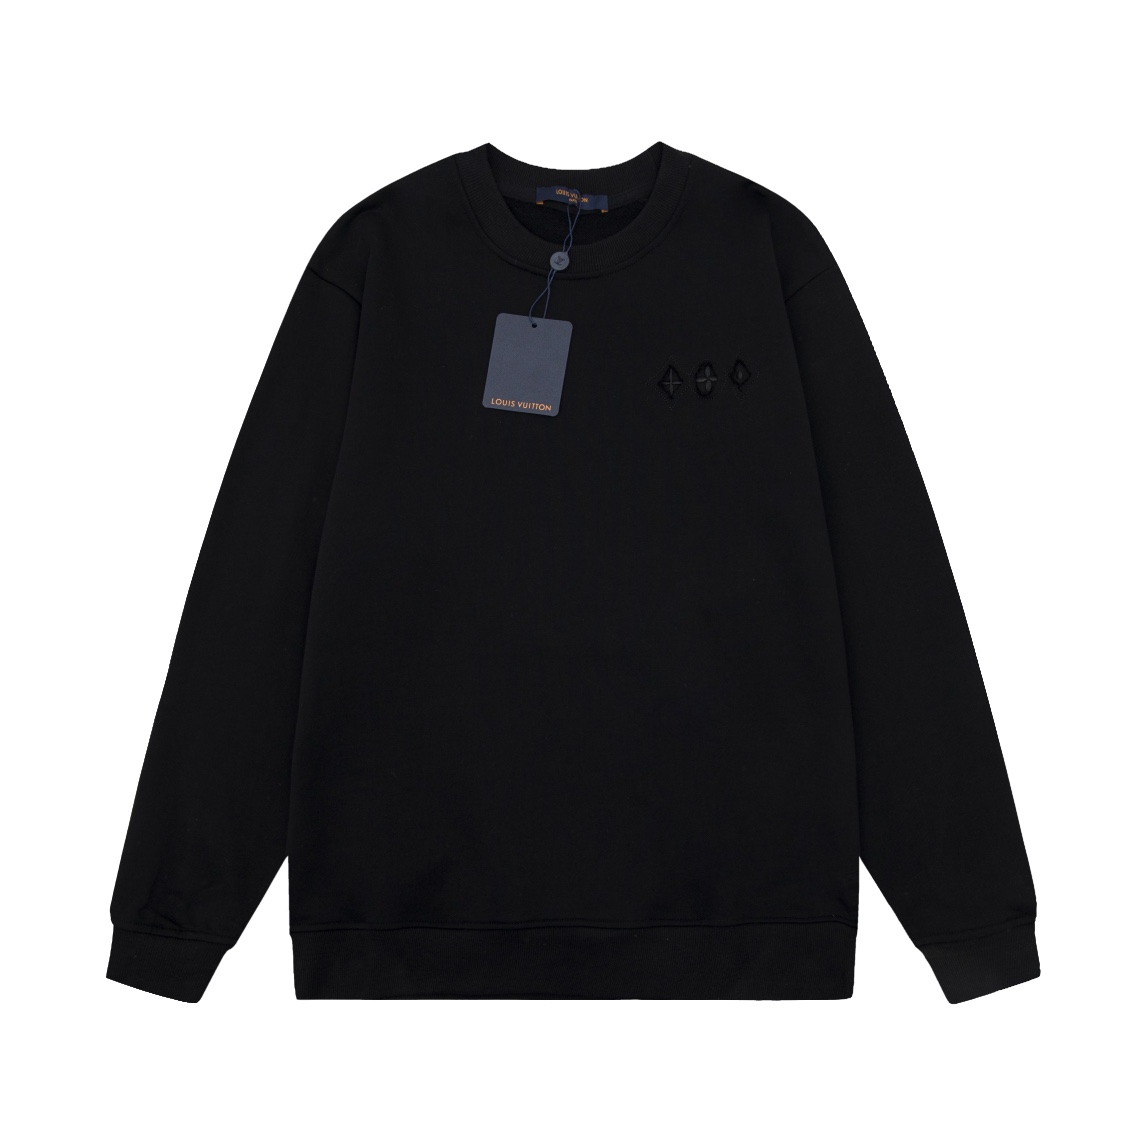 Louis Vuitton Clothing Sweatshirts Black Khaki White